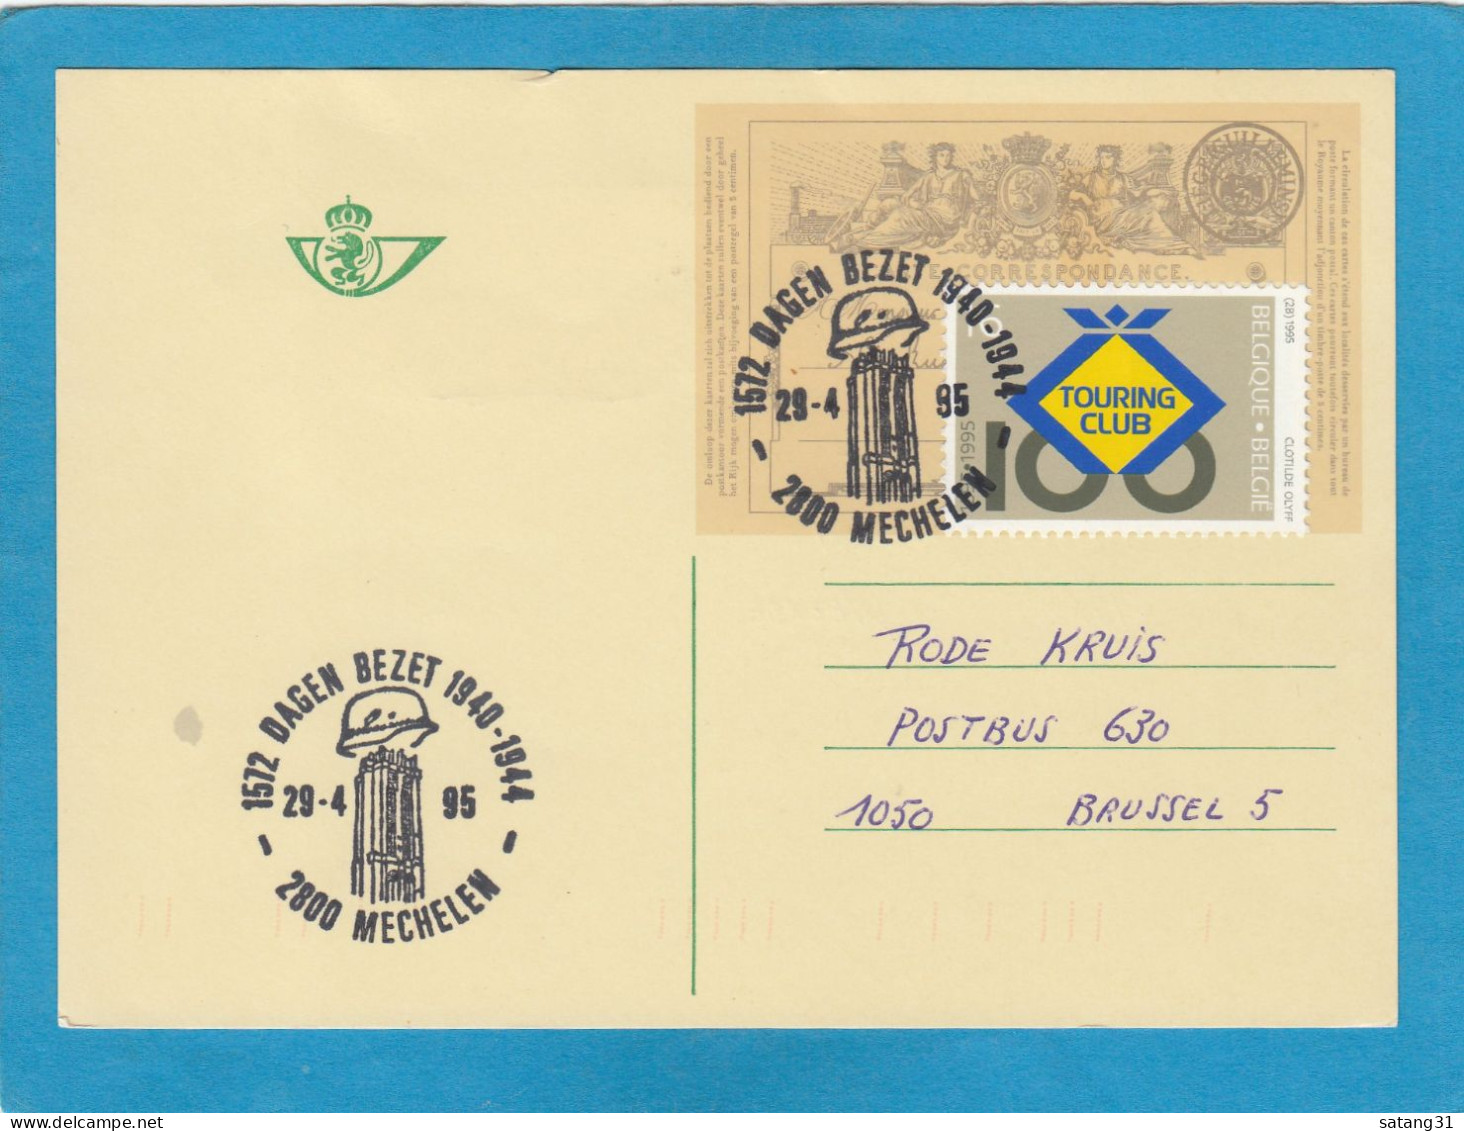 ENTIER POSTAL AVEC TIMBRE "TOURING CLUB" ET CACHET "1572 DAGEN BEZET 1940-1944 MECHELEN 29-4-95". - Cartes Postales 1951-..